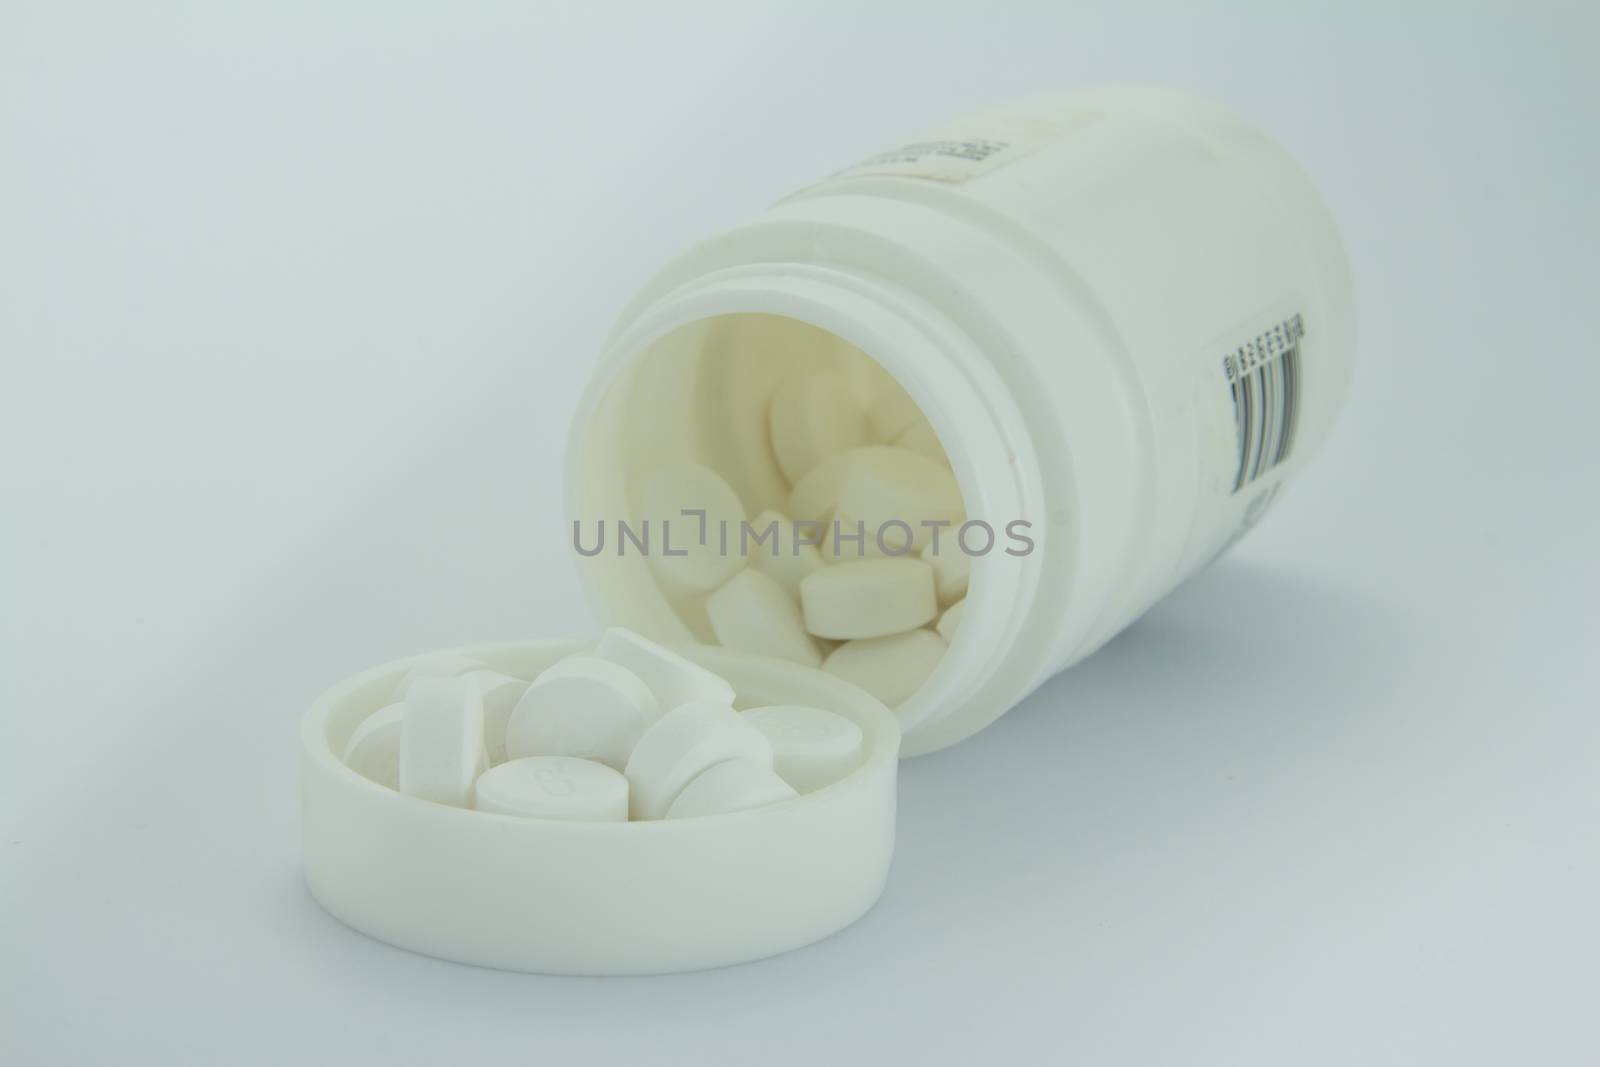 White pills an pill bottle on white background